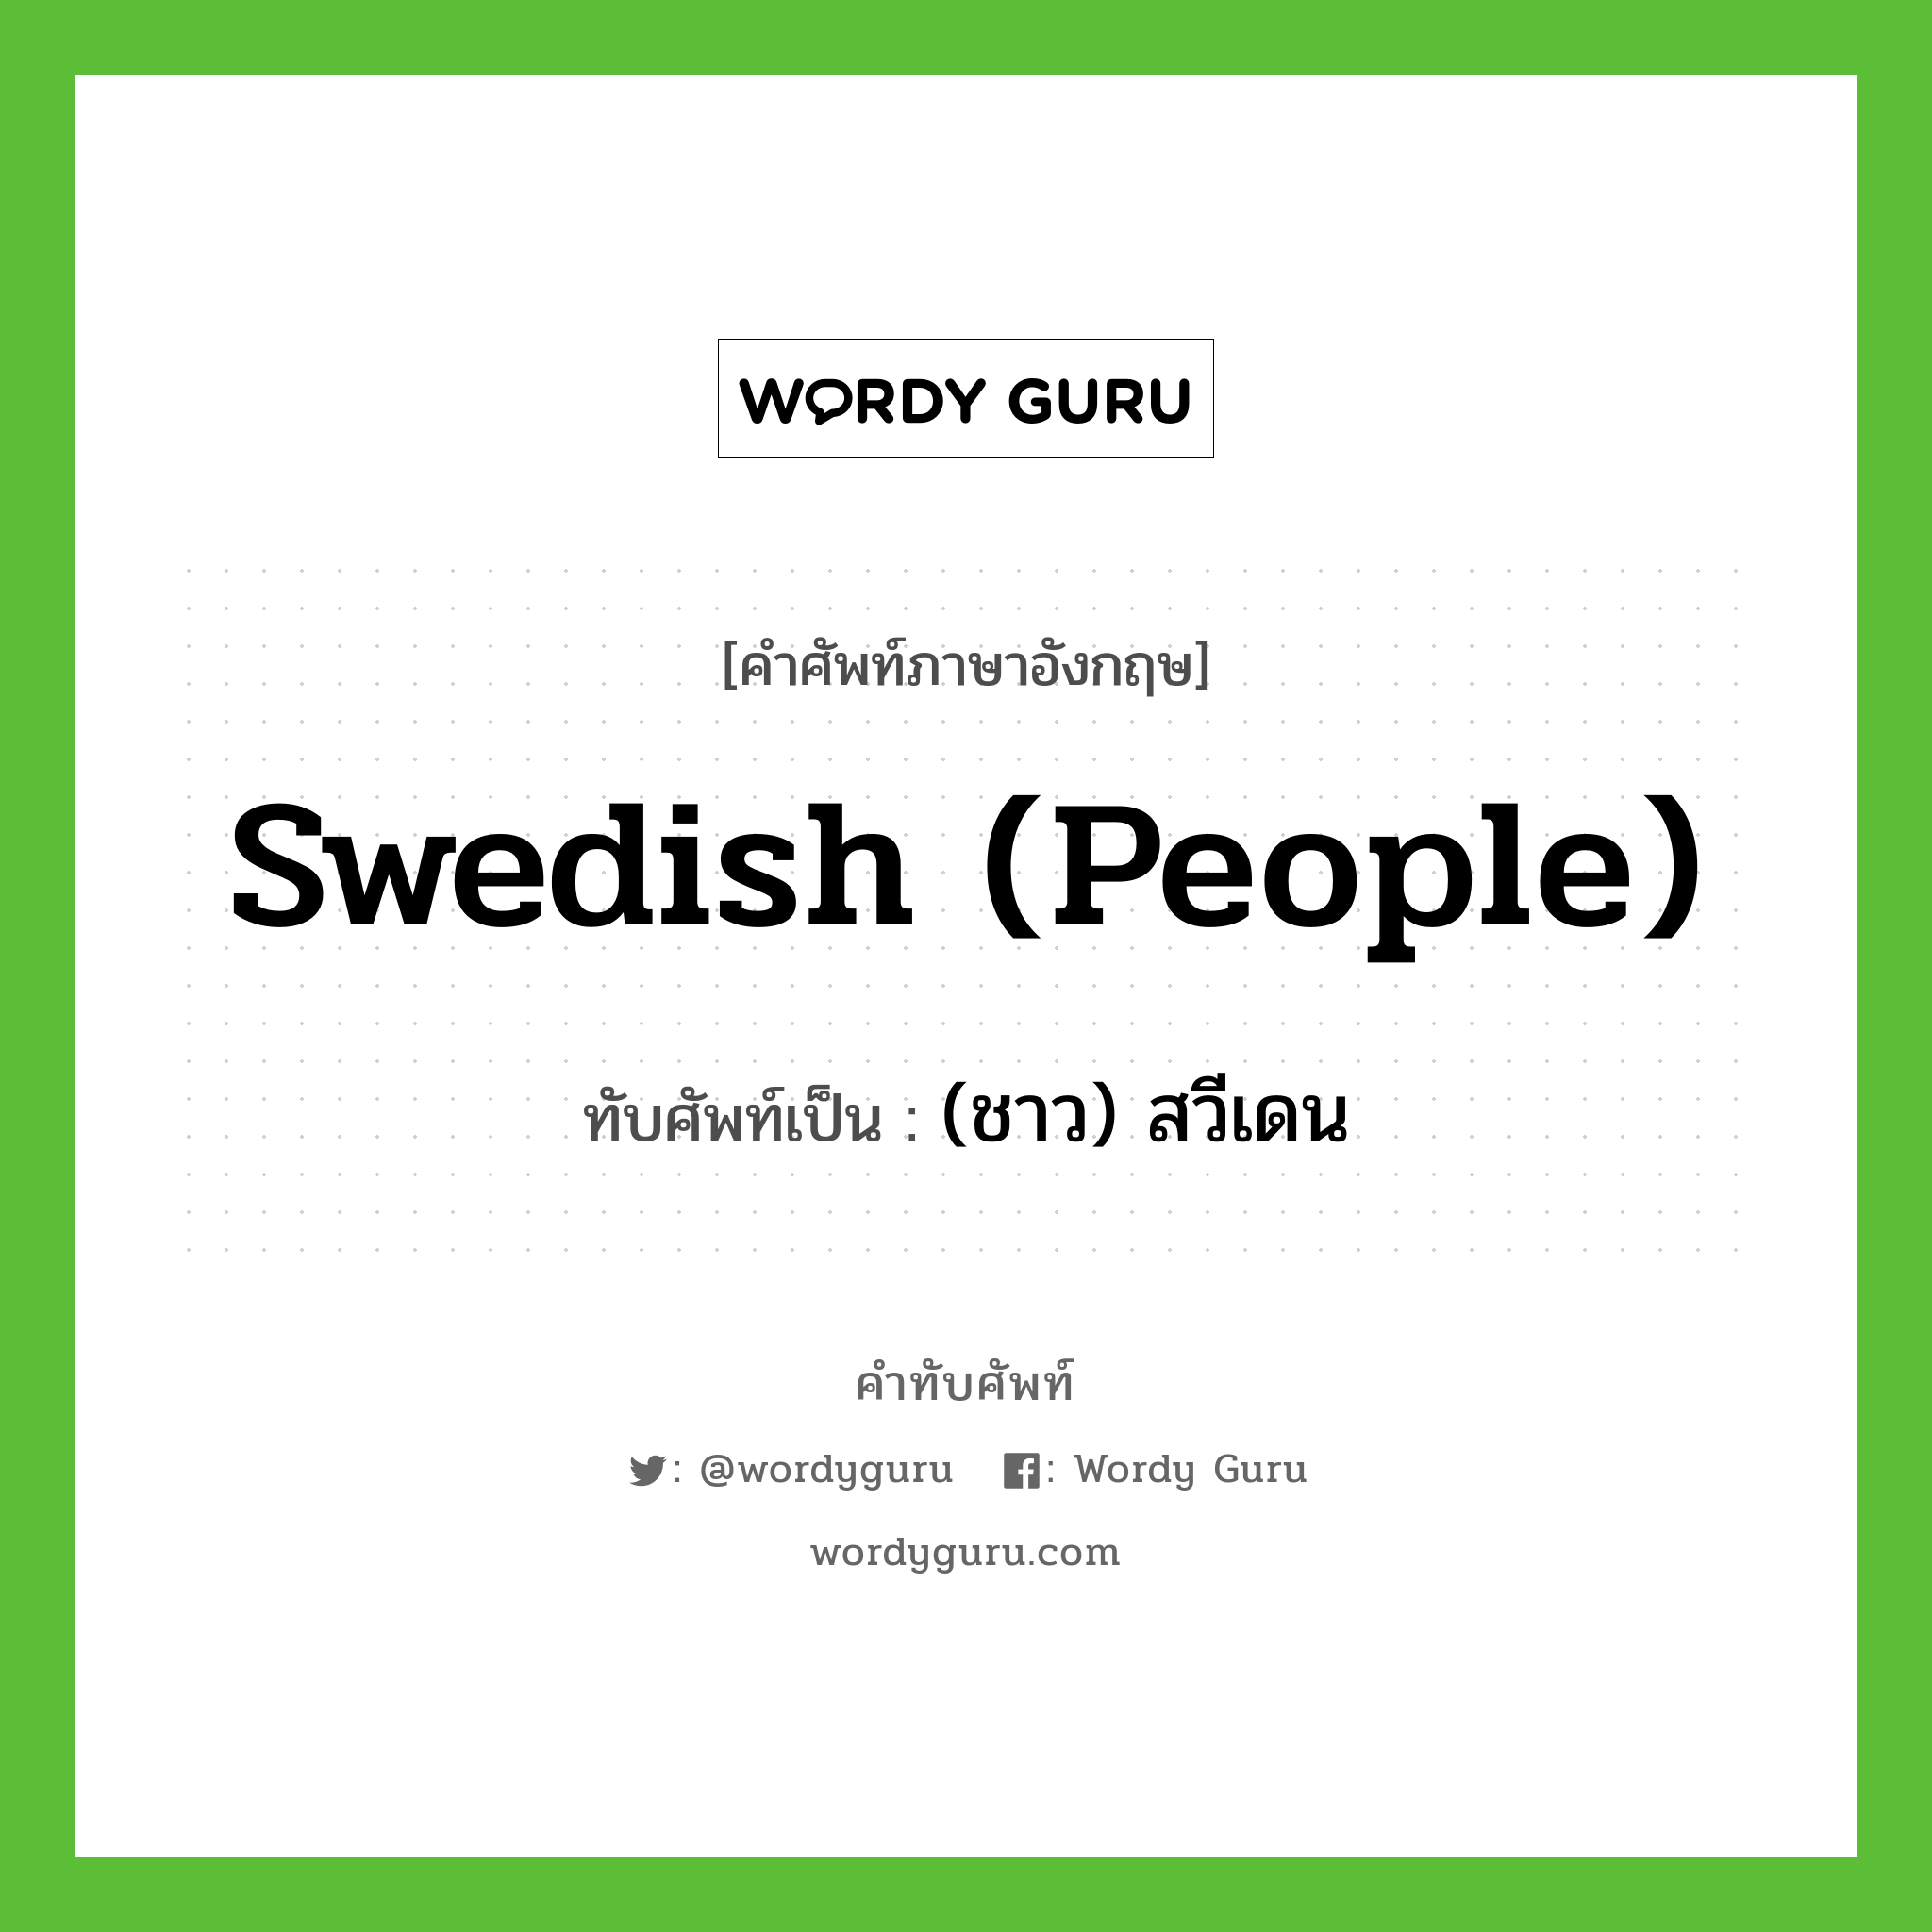 (ชาว) สวีเดน เขียนอย่างไร?, คำศัพท์ภาษาอังกฤษ (ชาว) สวีเดน ทับศัพท์เป็น Swedish (people)